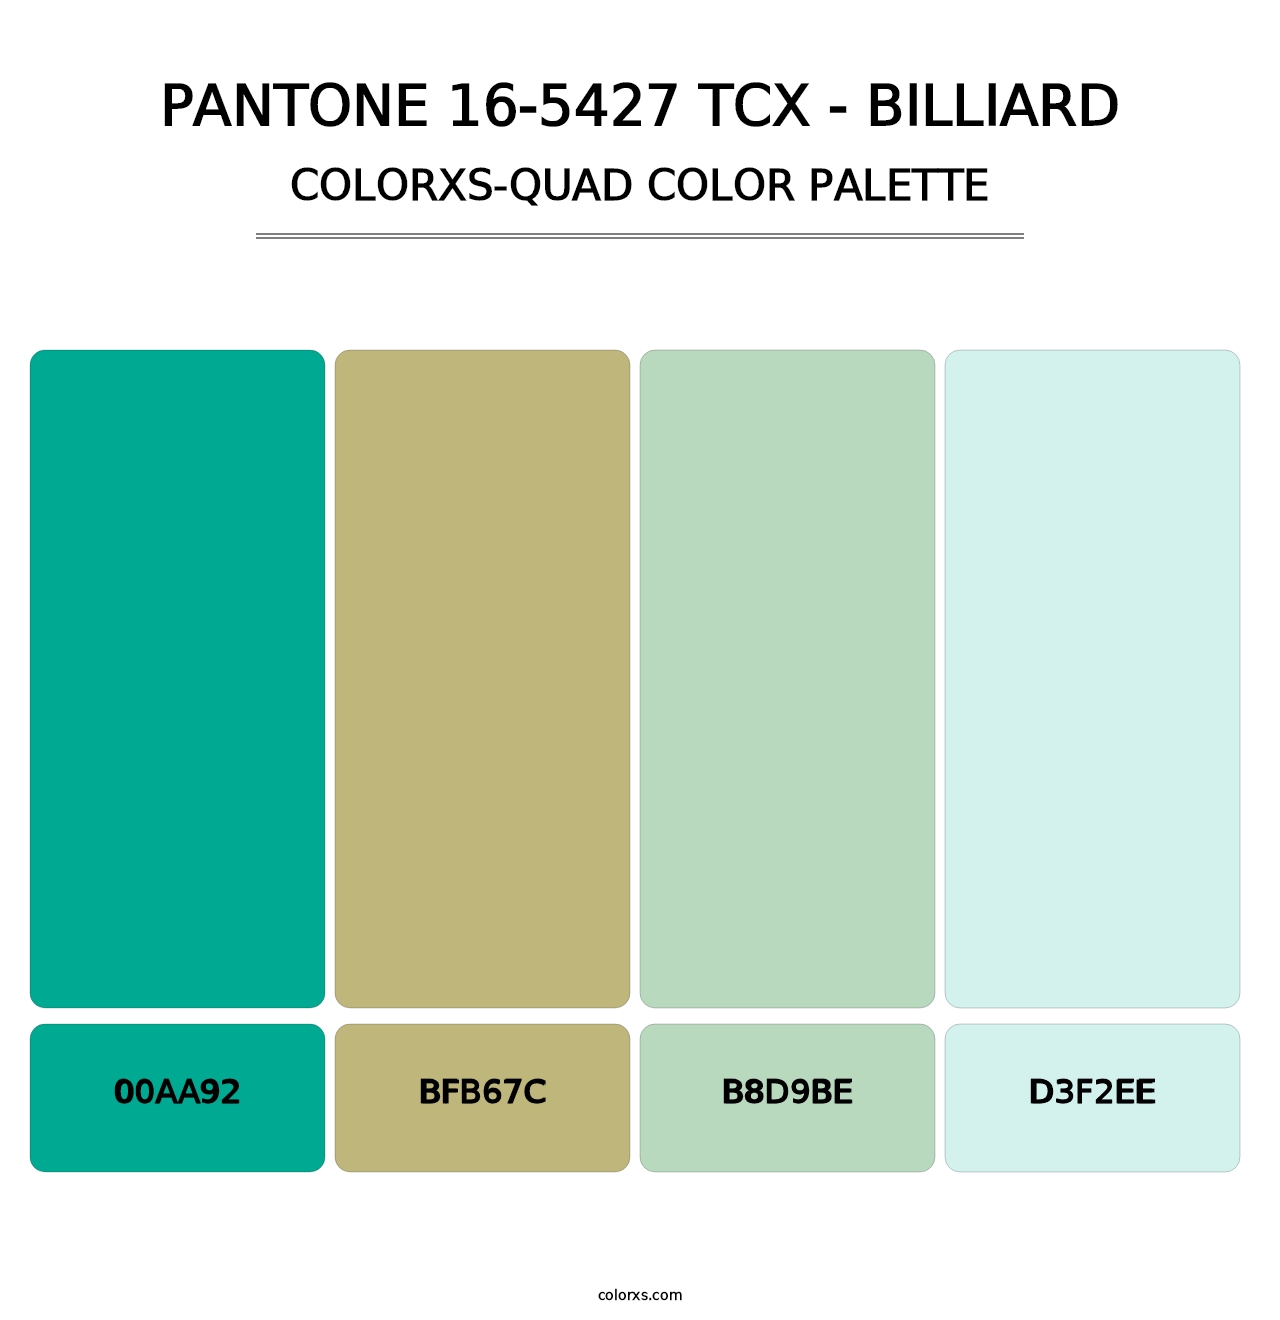 PANTONE 16-5427 TCX - Billiard - Colorxs Quad Palette